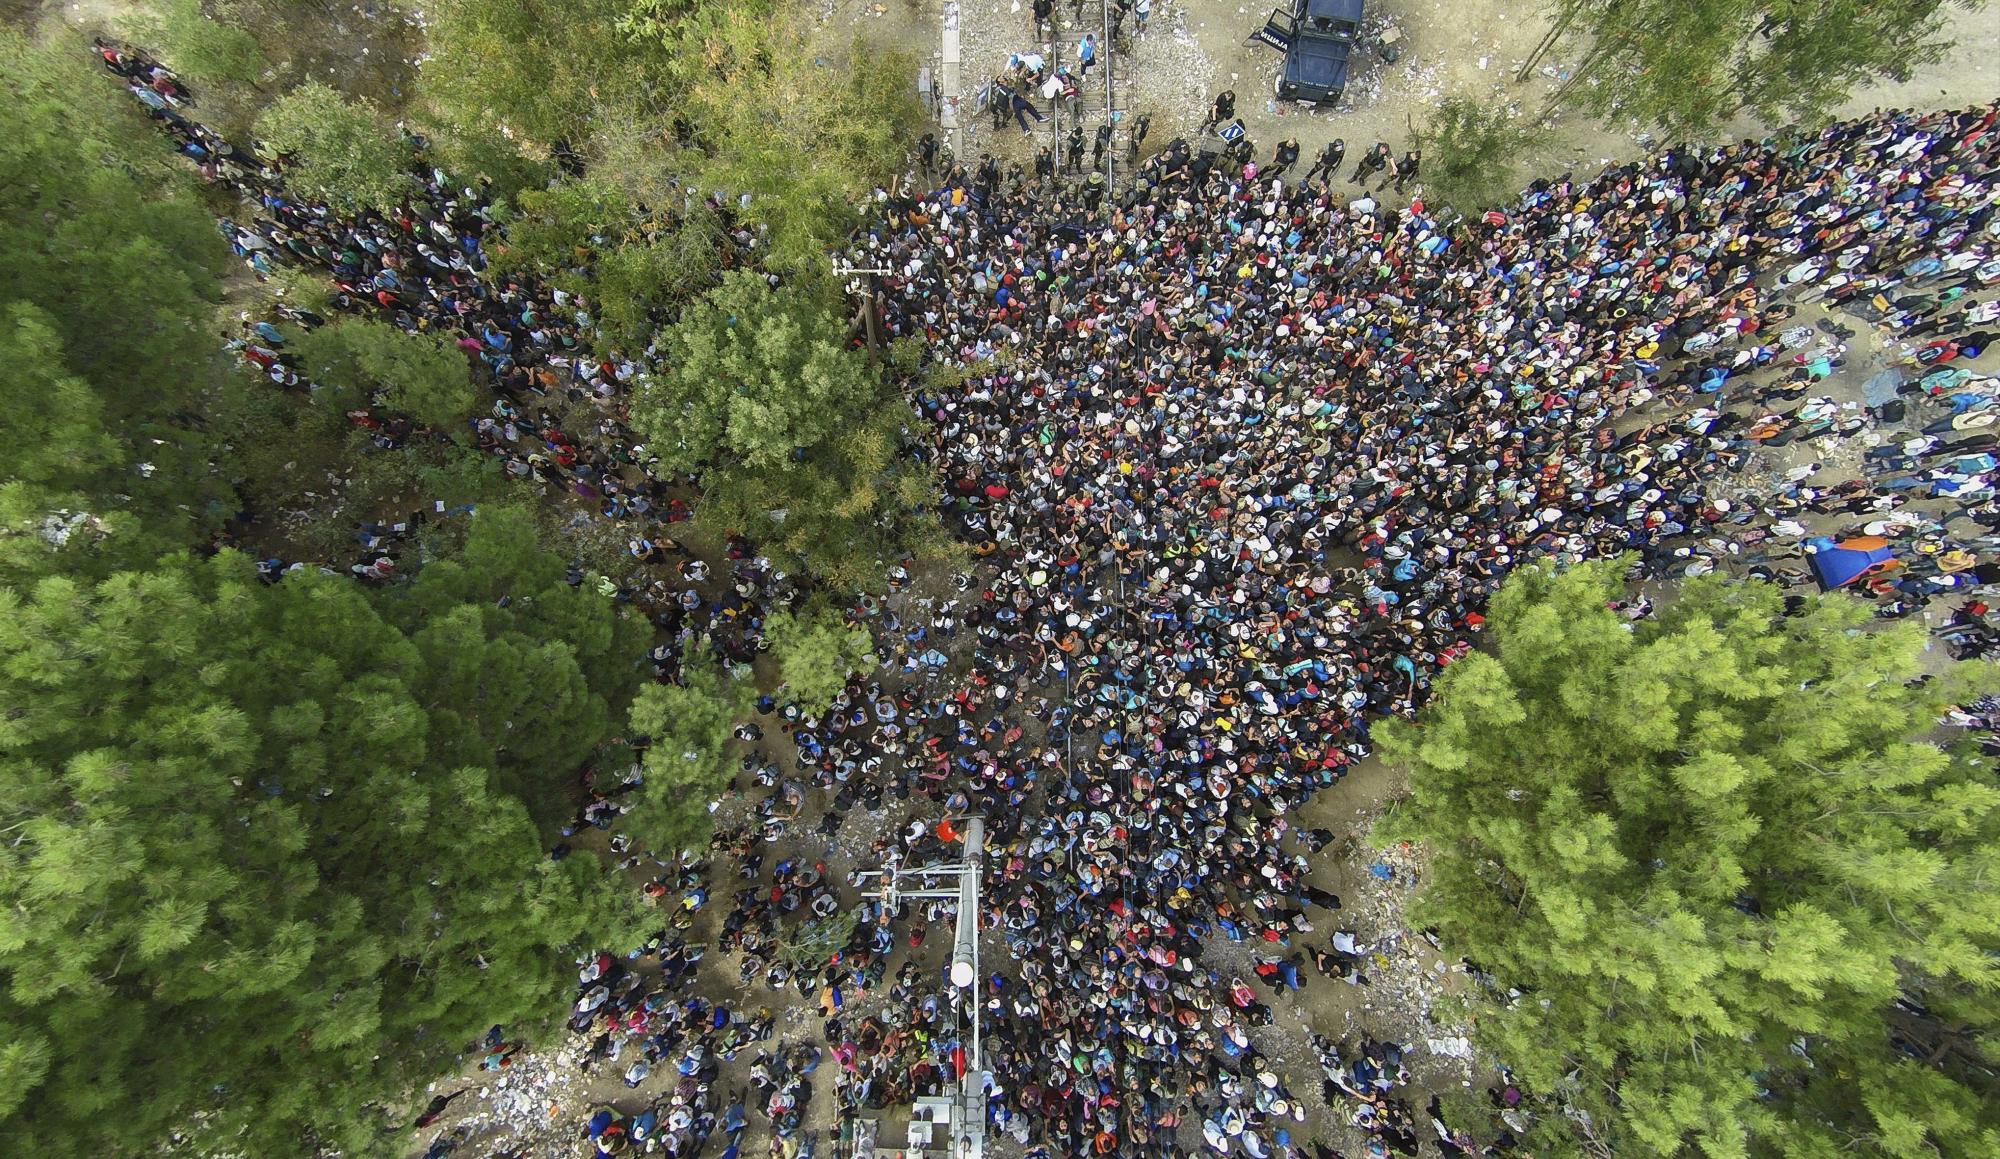 Según la agencia de noticias griega AMNA, los agentes intentaron dispersar a unos 2.000 inmigrantes, en su mayoría refugiados, que estaban bloqueados en Eidomeni, el paso fronterizo del sur de la Antigua República Yugoslavia de Macedonia.